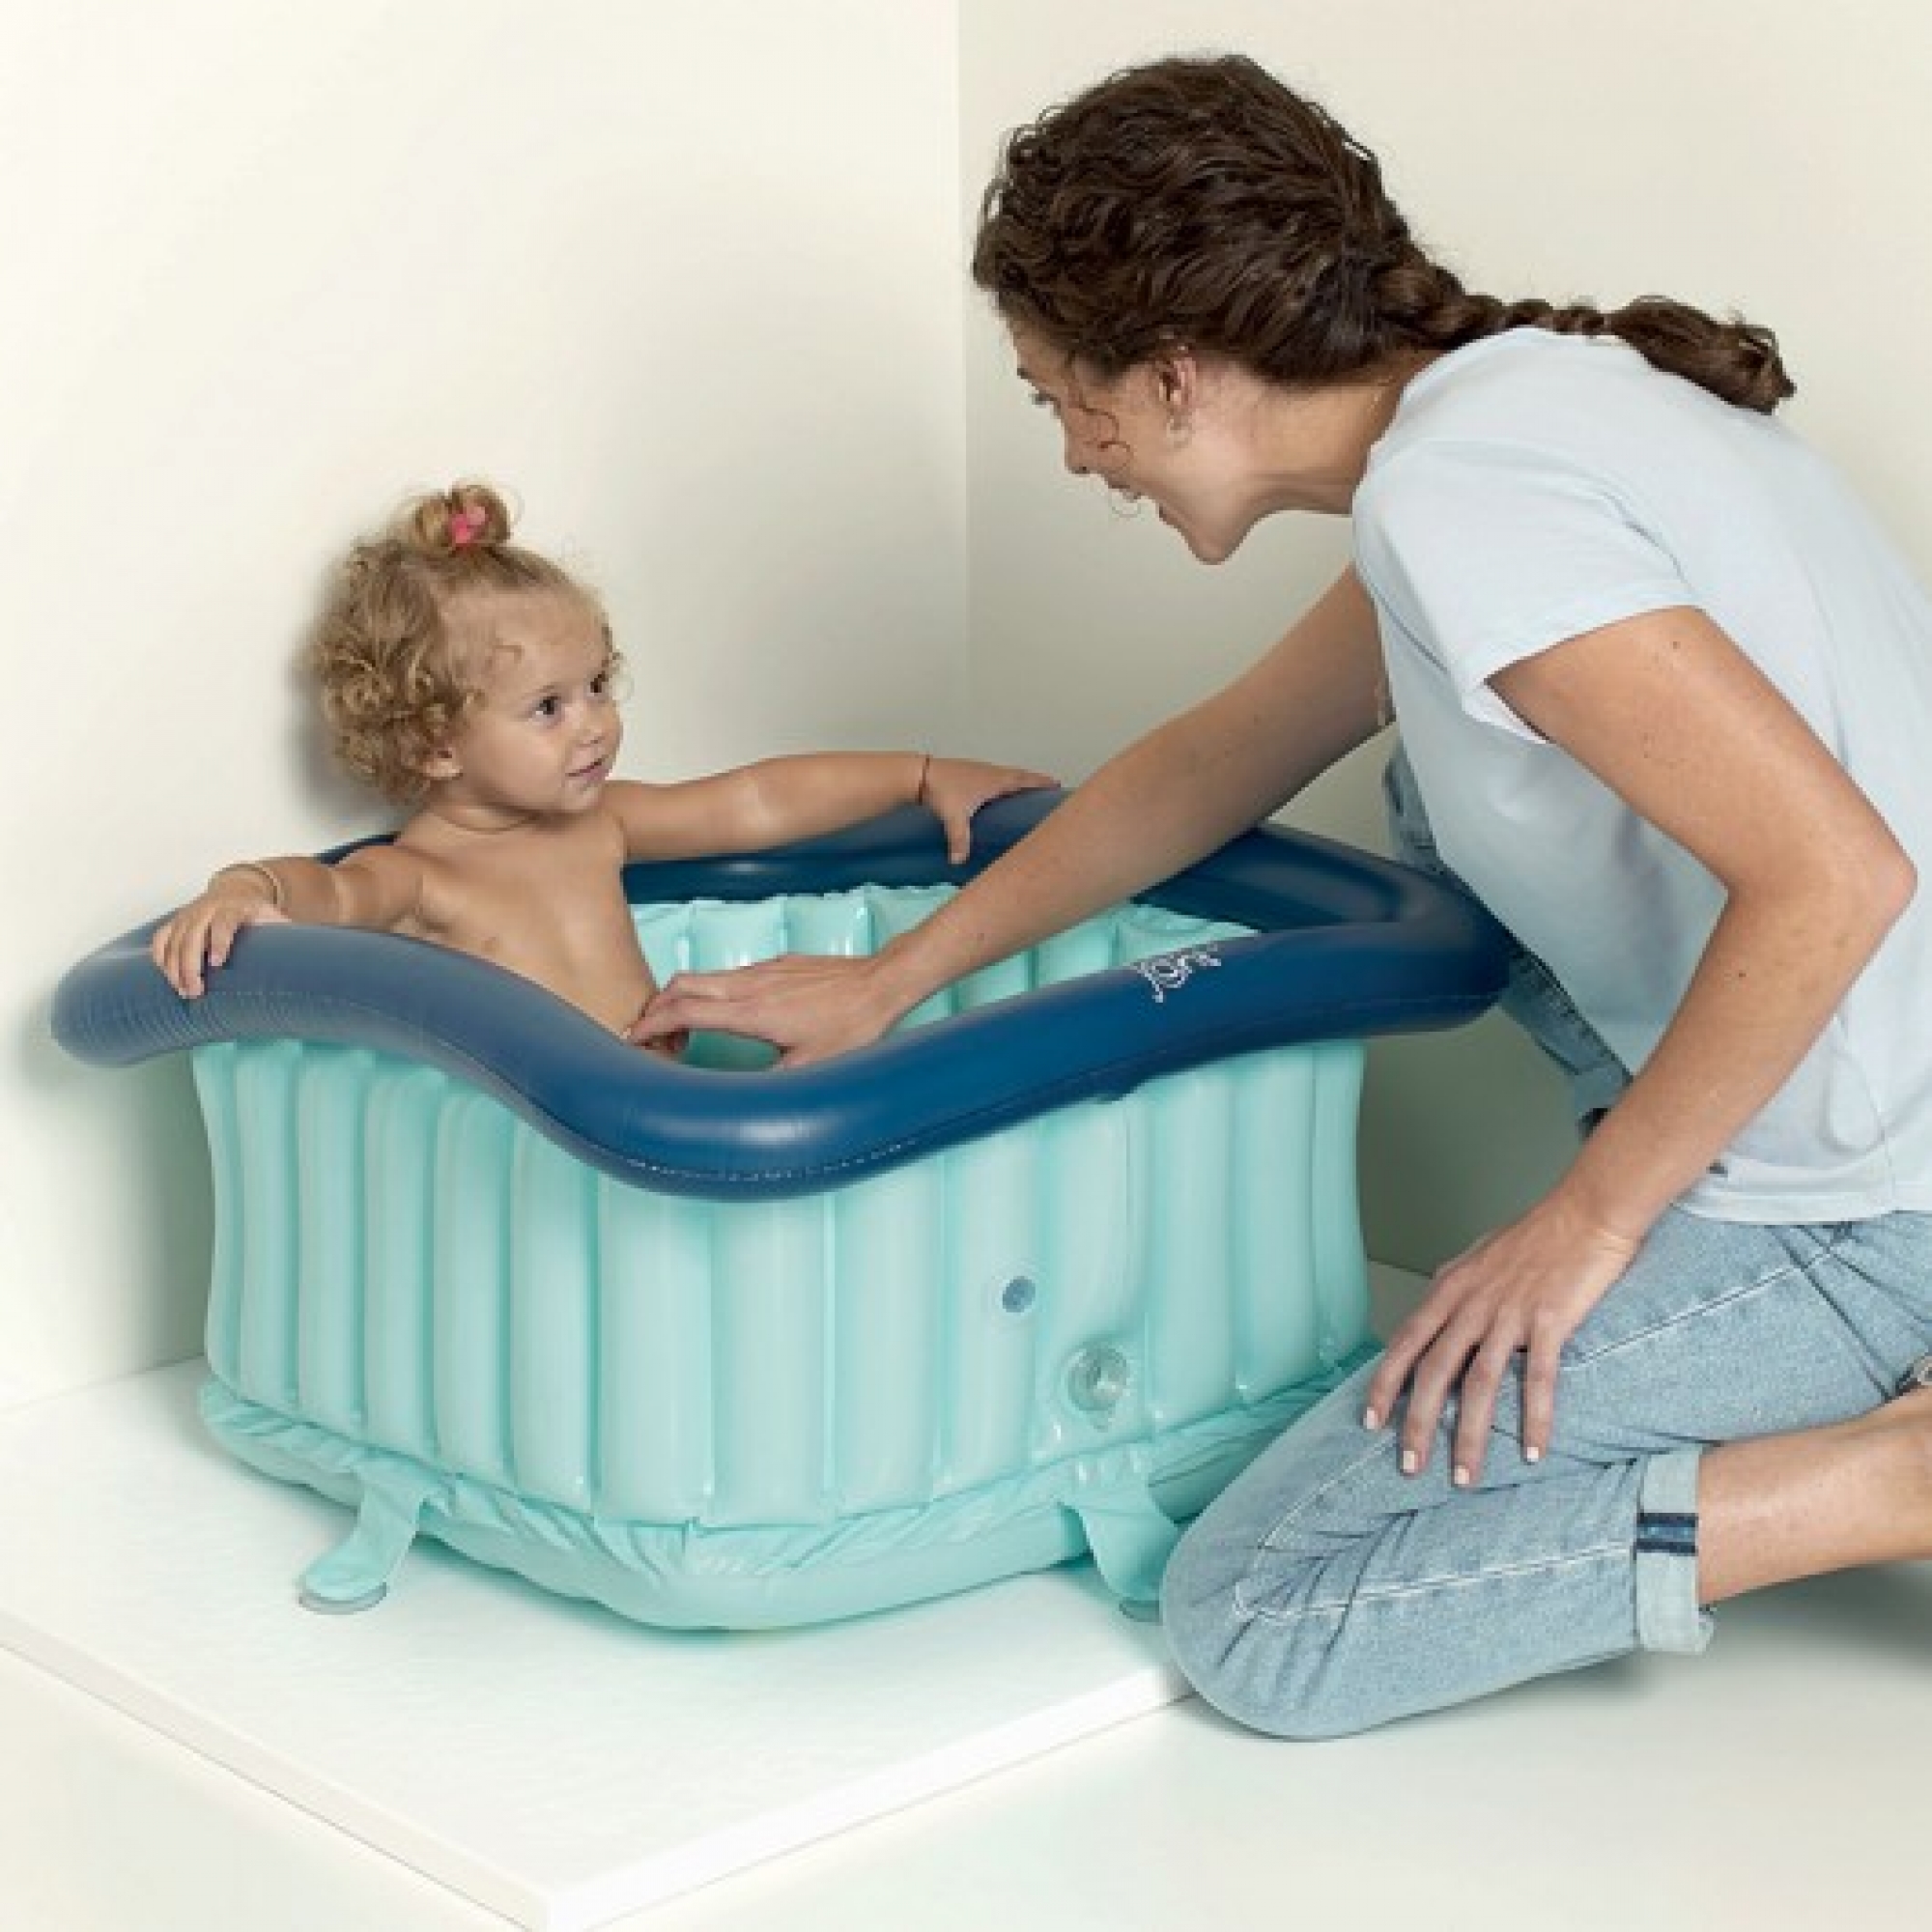 Baignoire gonflable portable pour bébé, baignoire gonflable